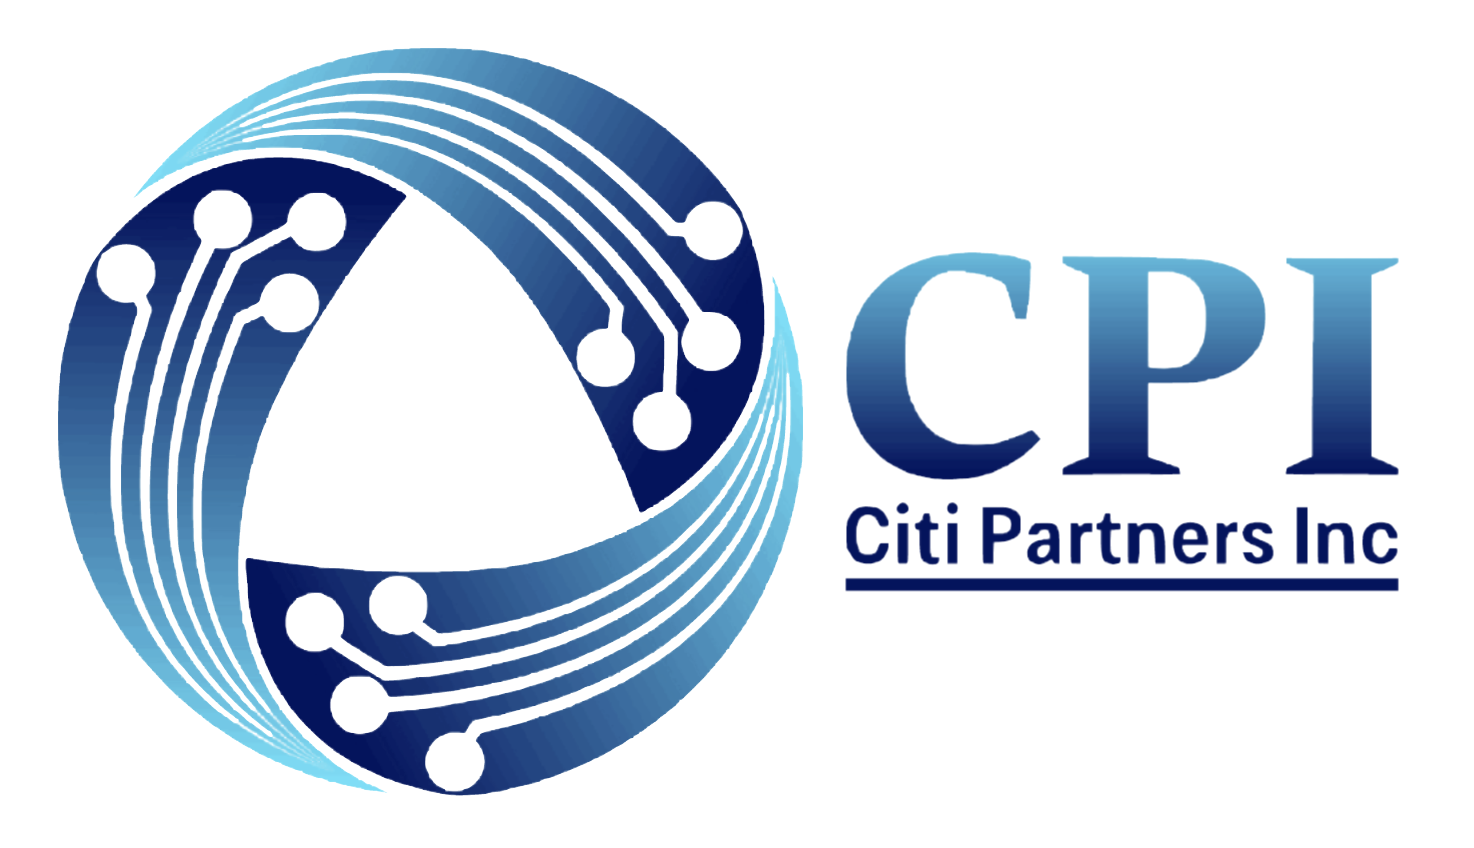 Citi Partners Inc